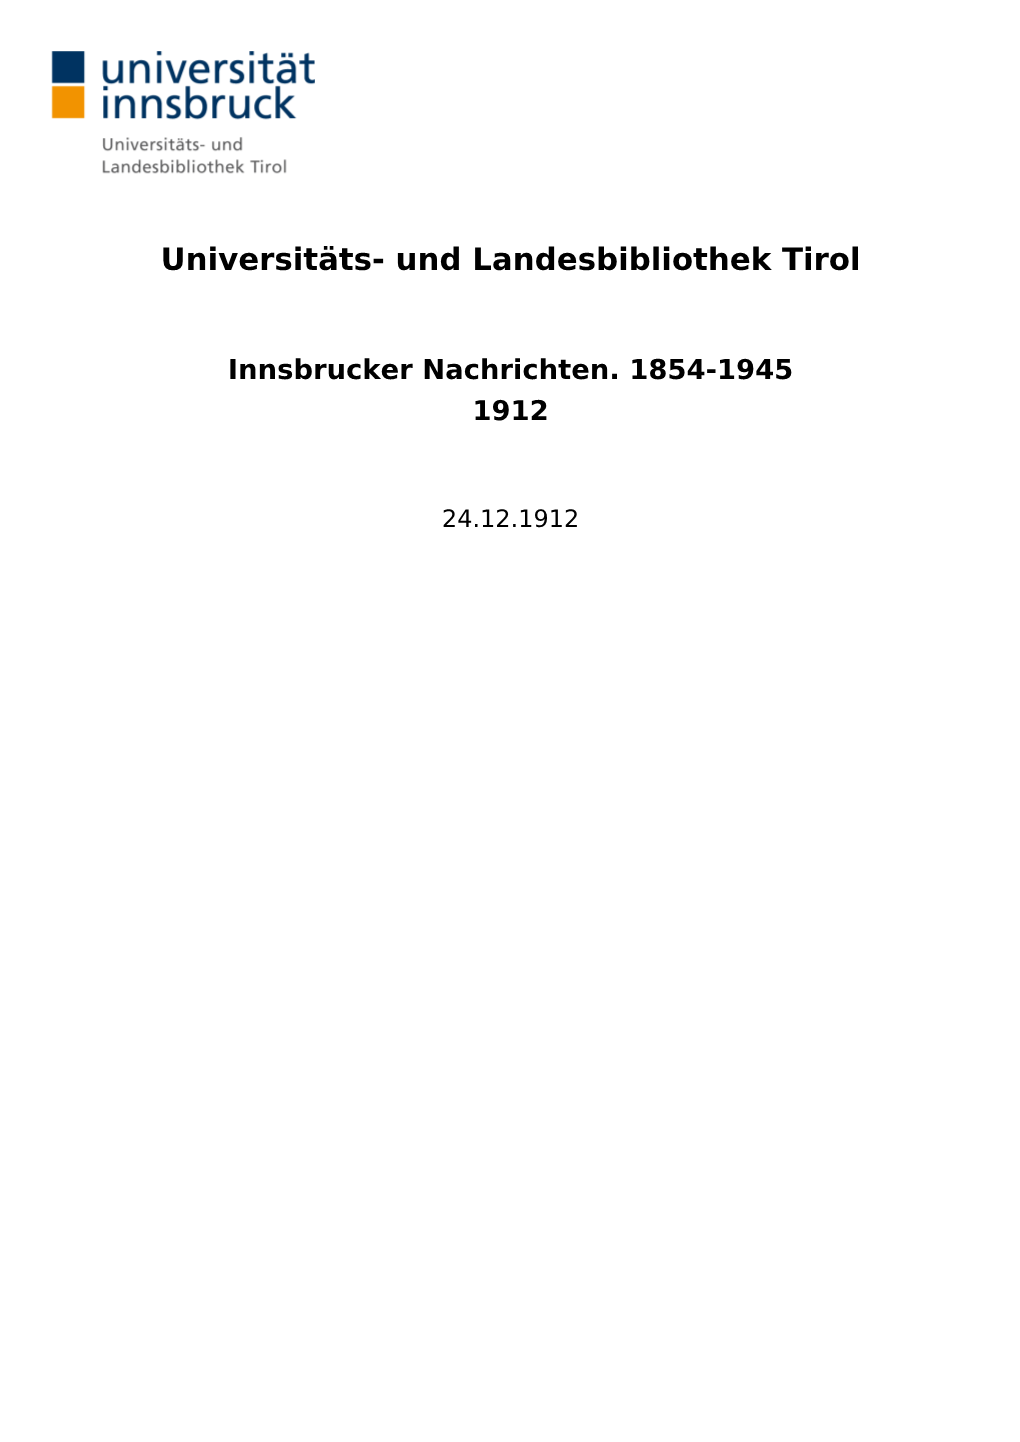 Innsbrucker Nachrichten. 1854-1945 1912